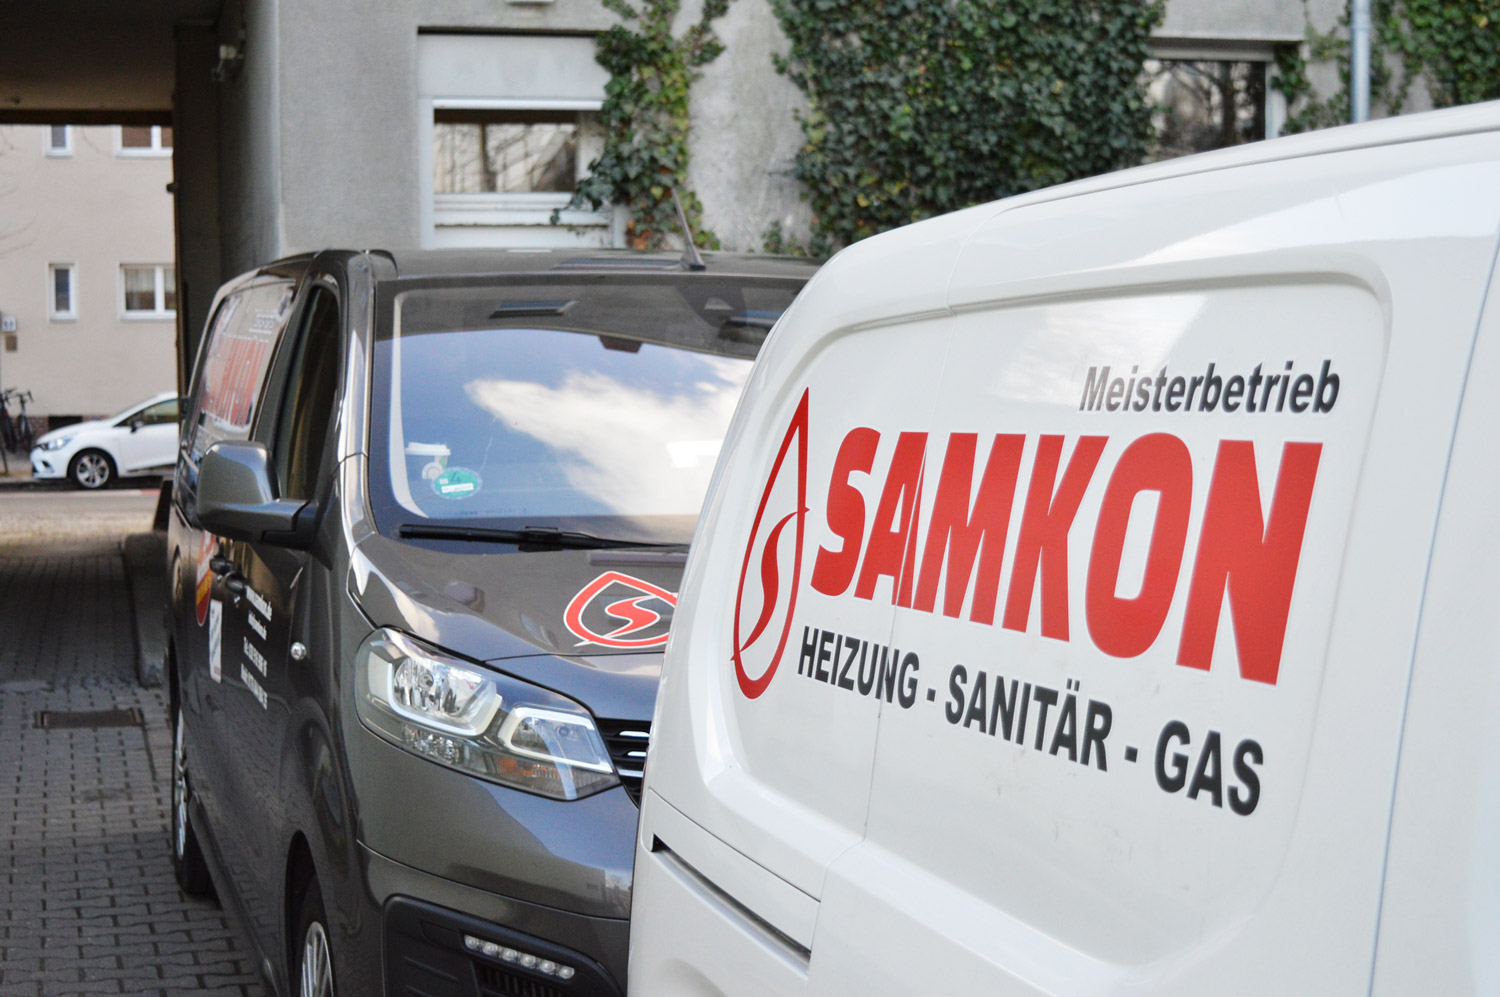 Gas, Wasser und Heizung Installateur in Berlin - SamKon GmbH